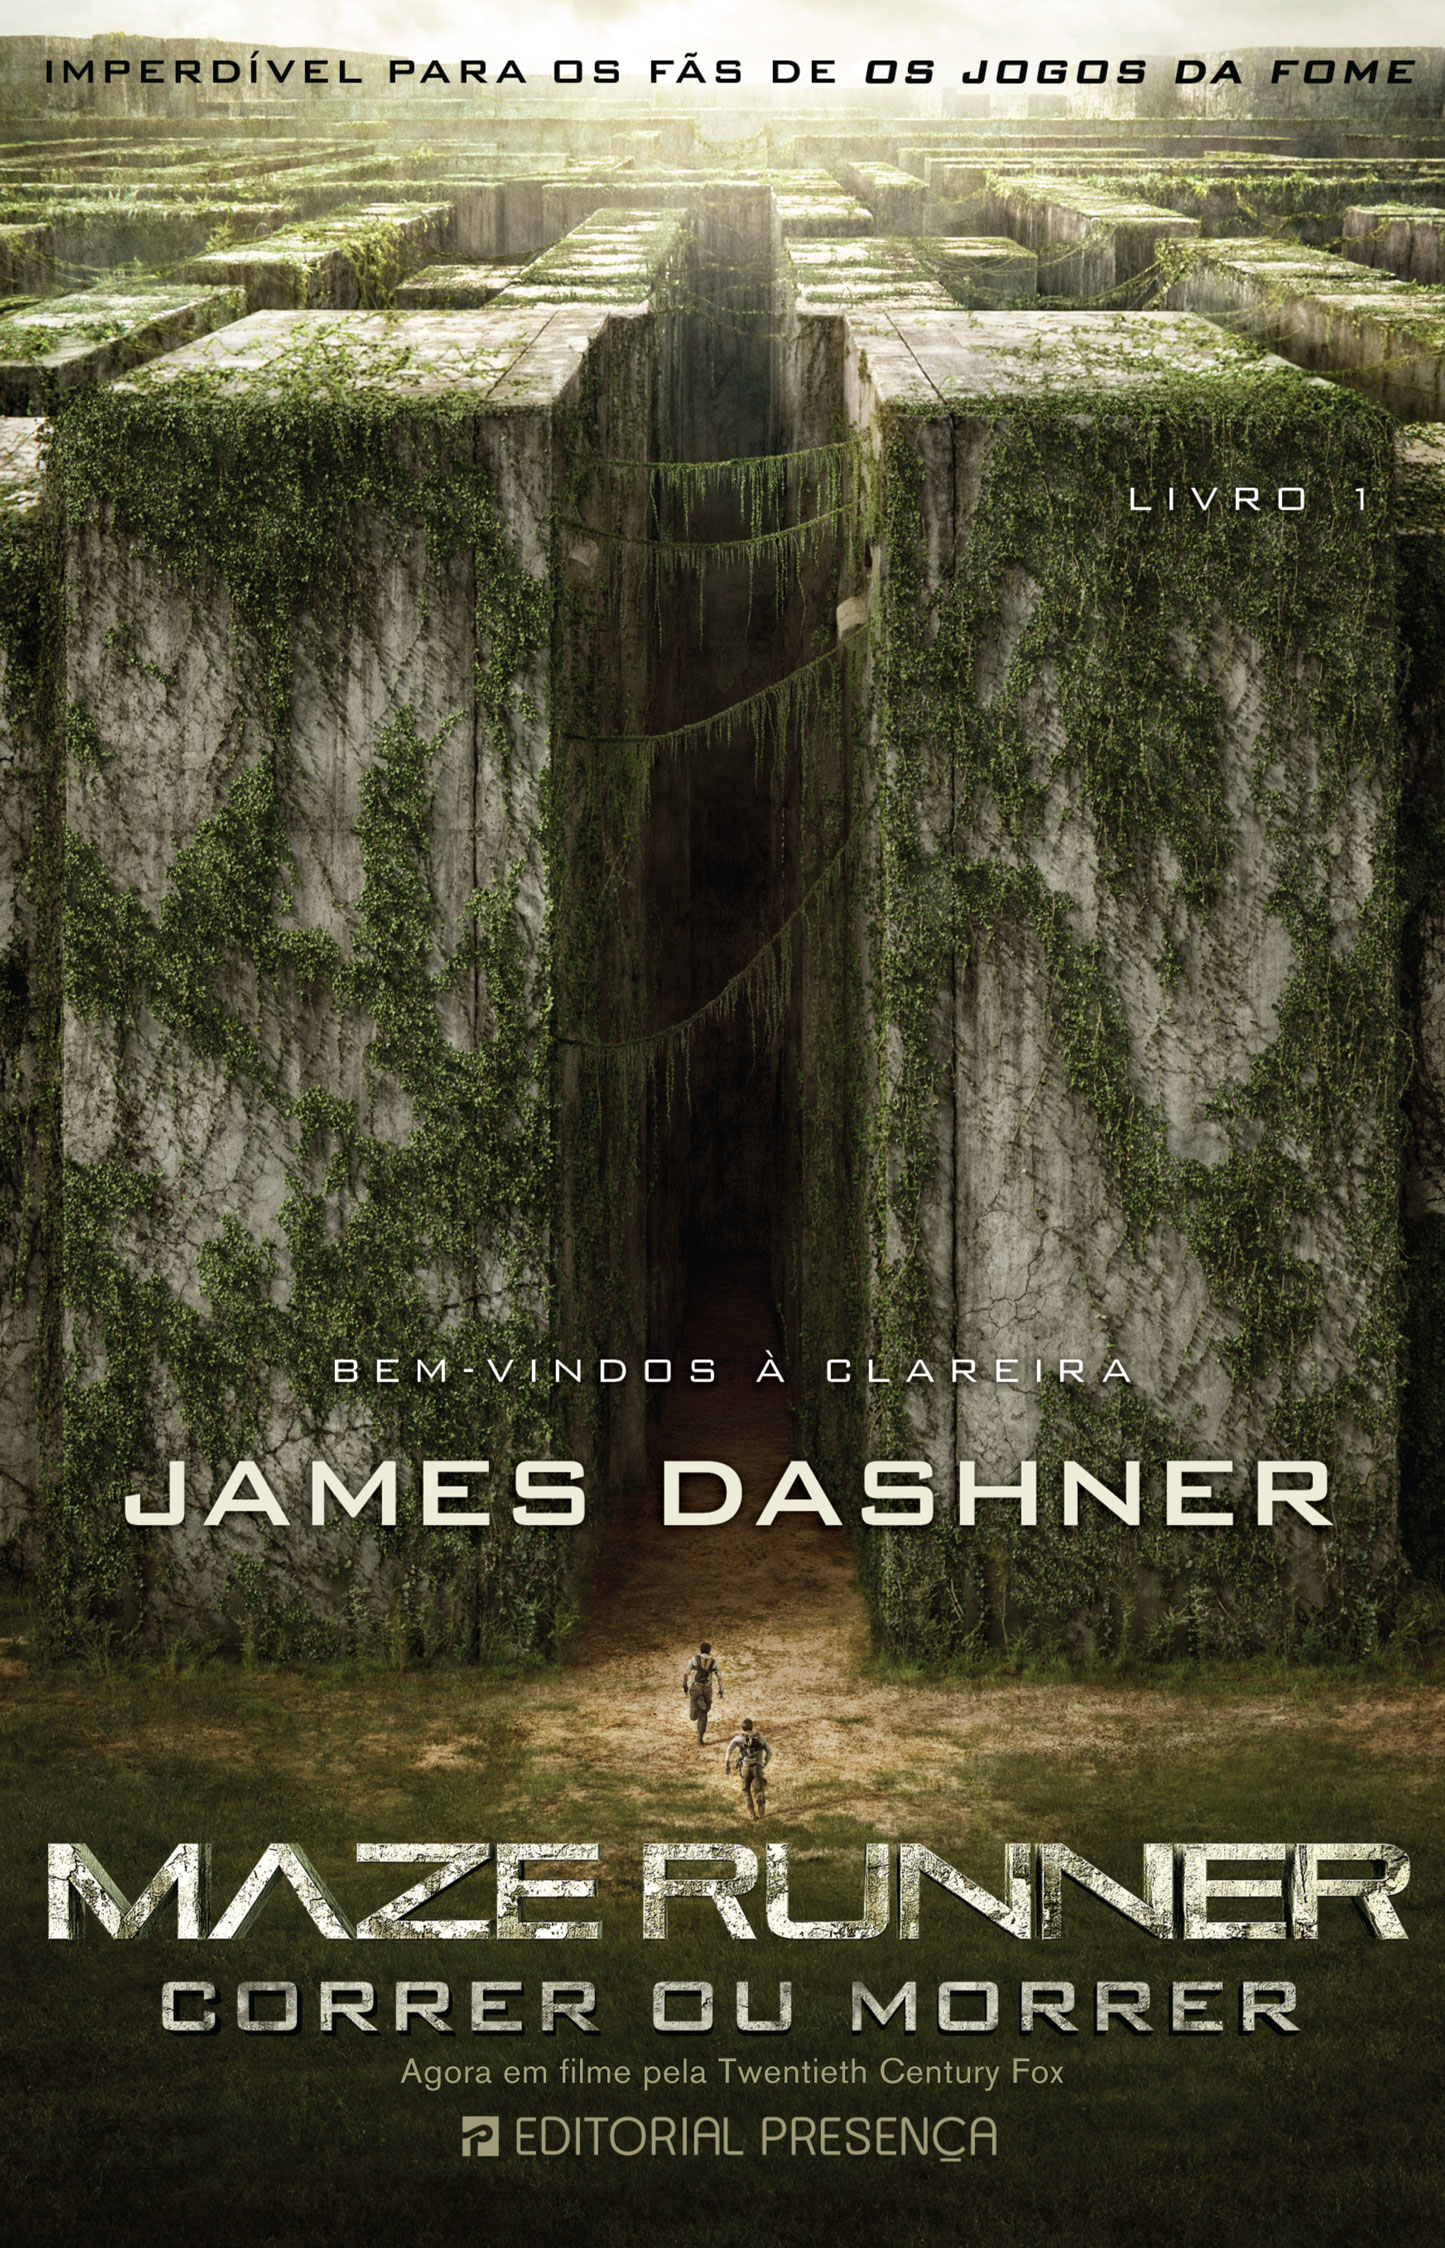 Filme 'Jogos Vorazes' fez meus livros ficarem famosos”, diz James Dashner,  da saga 'Maze Runner